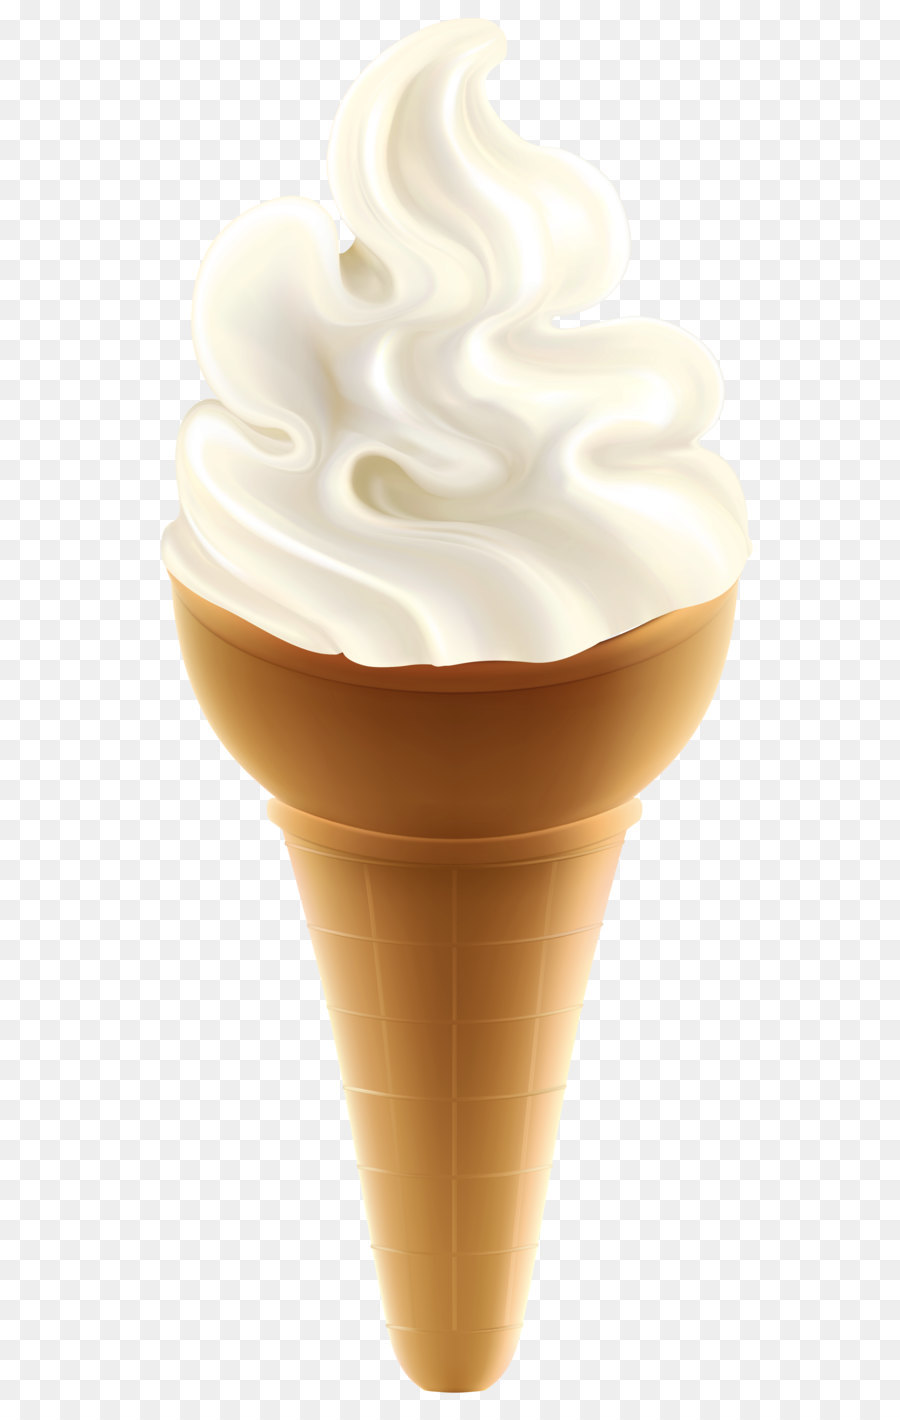 Ice cream cone Sundae Chocolate ice cream - Transparent Ice Cream Cone Picture png download - 2192*4768 - Free Transparent Ice Cream png Download.